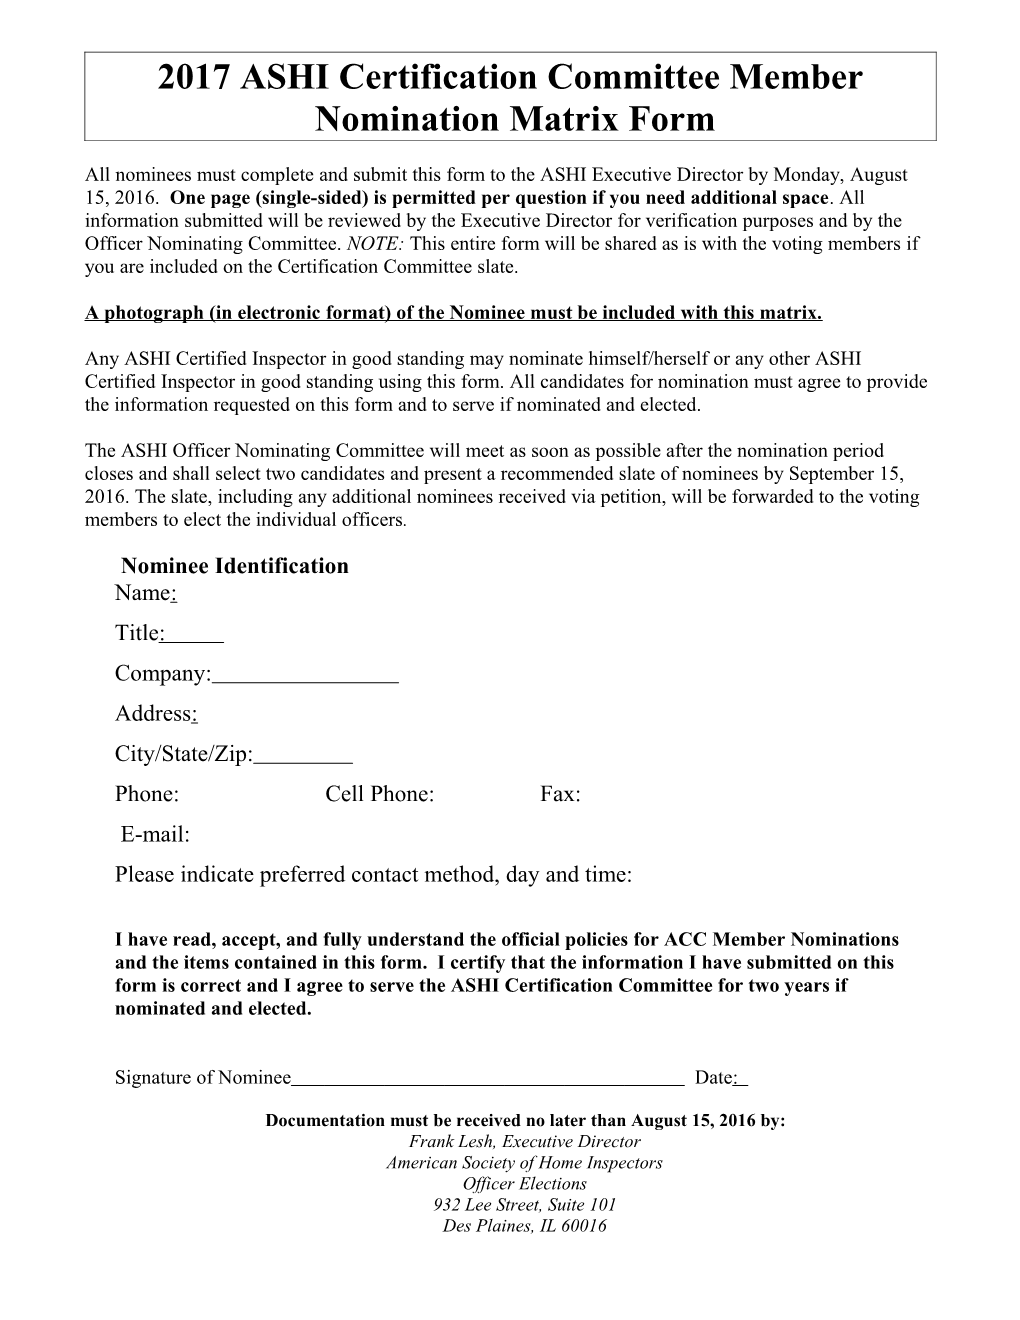 ASHI Officer Nomination Matrix Form